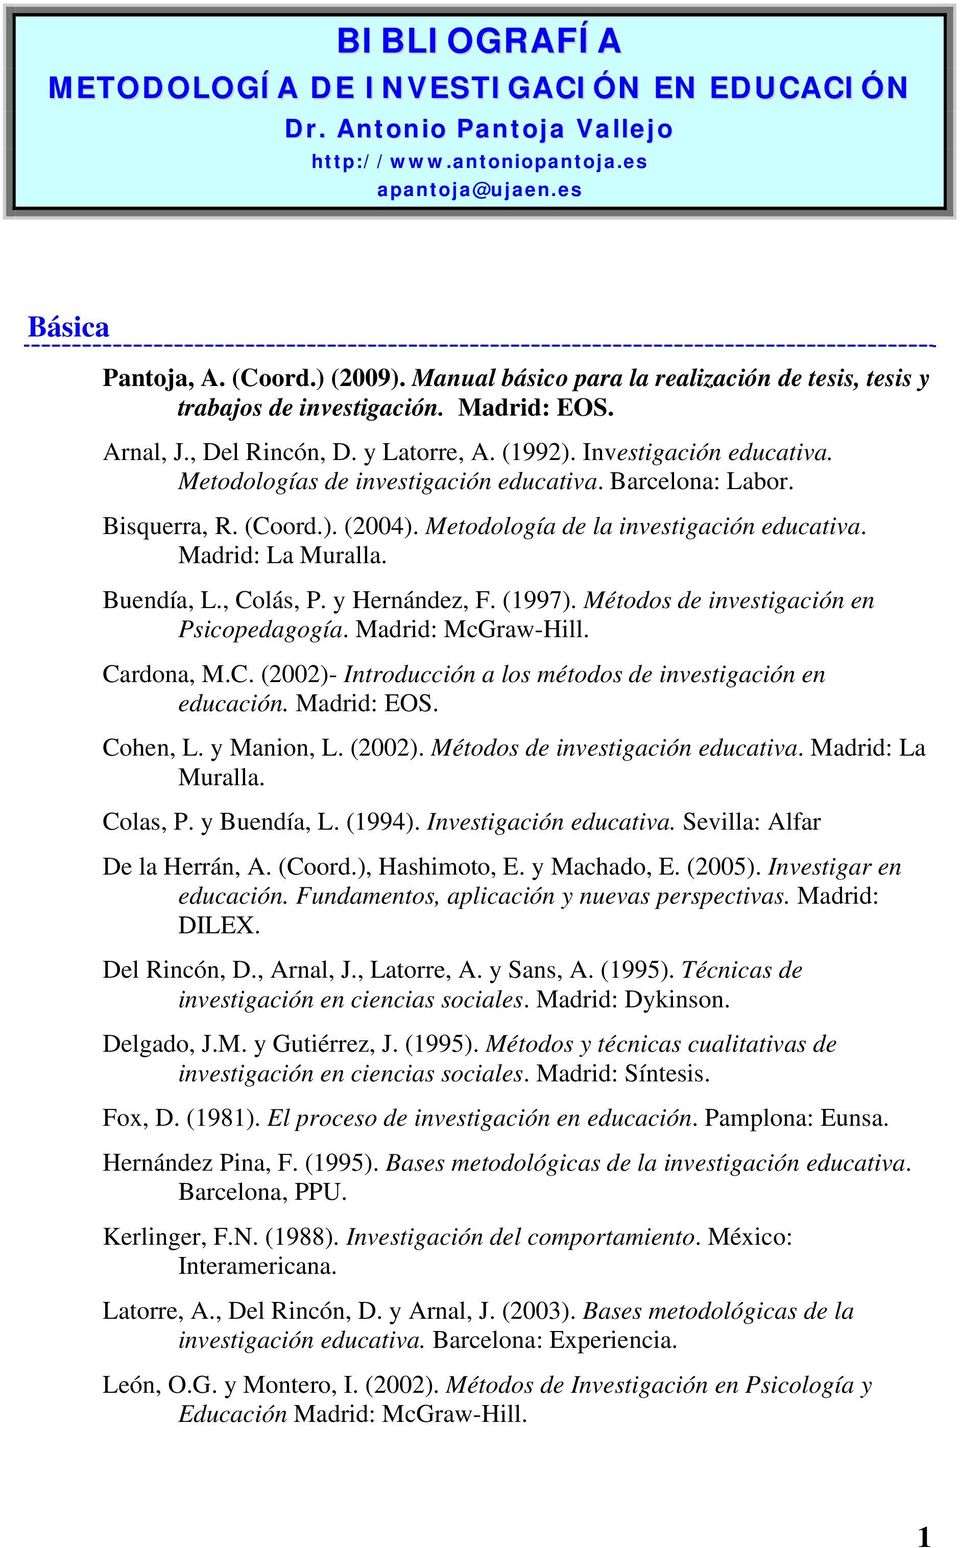 Metodologías de investigación educativa. Barcelona: Labor. Bisquerra, R. (Coord.). (2004). Metodología de la investigación educativa. Madrid: La Muralla. Buendía, L., Colás, P. y Hernández, F. (1997).